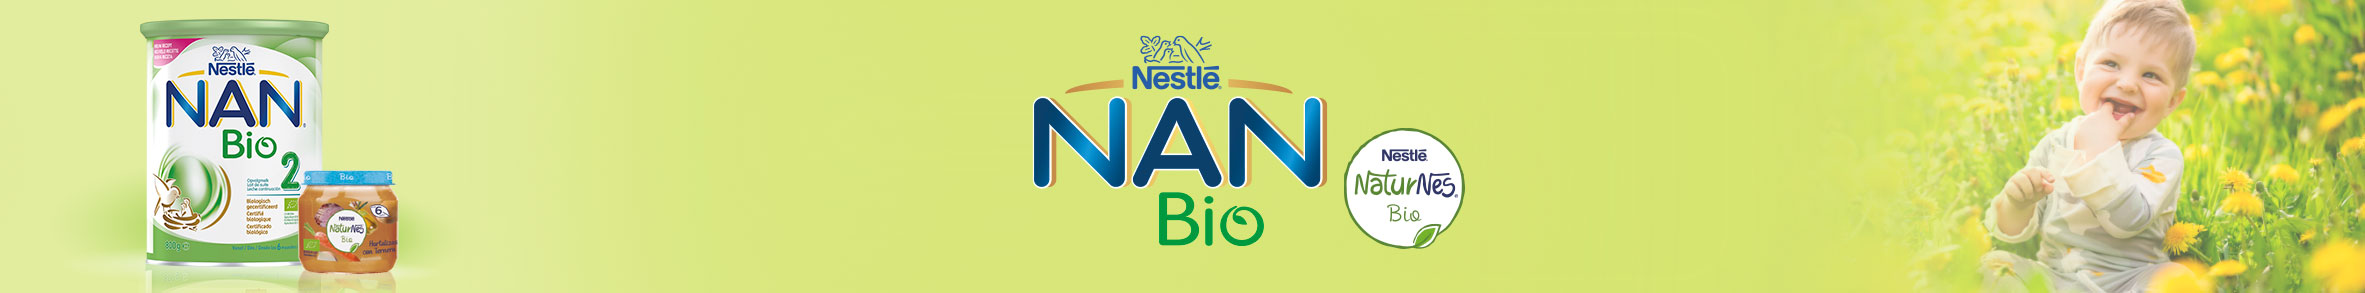 nan_bio